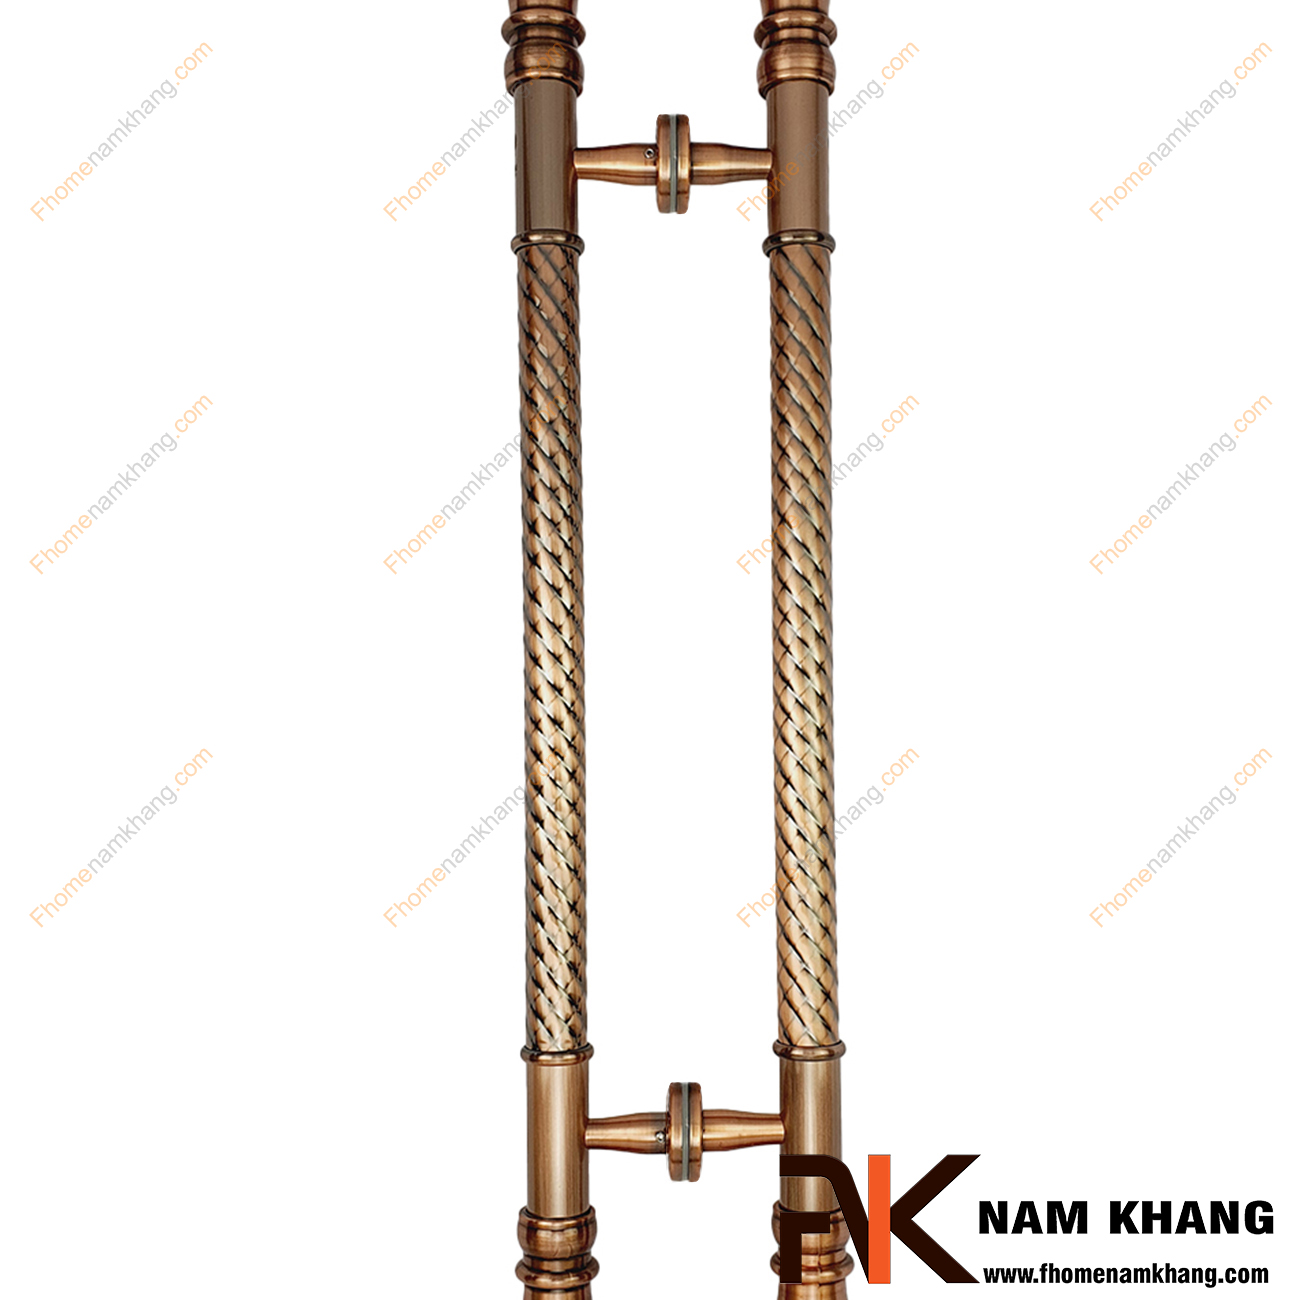 Tay nắm cửa chính bằng inox cao cấp màu đồng cổ NKC015-BD là dạng tay nắm đồng tâm, có kích thước lớn chuyên dùng cho cửa chính, cửa cổng, cửa gỗ, cửa 2 hoặc 4 cánh,...